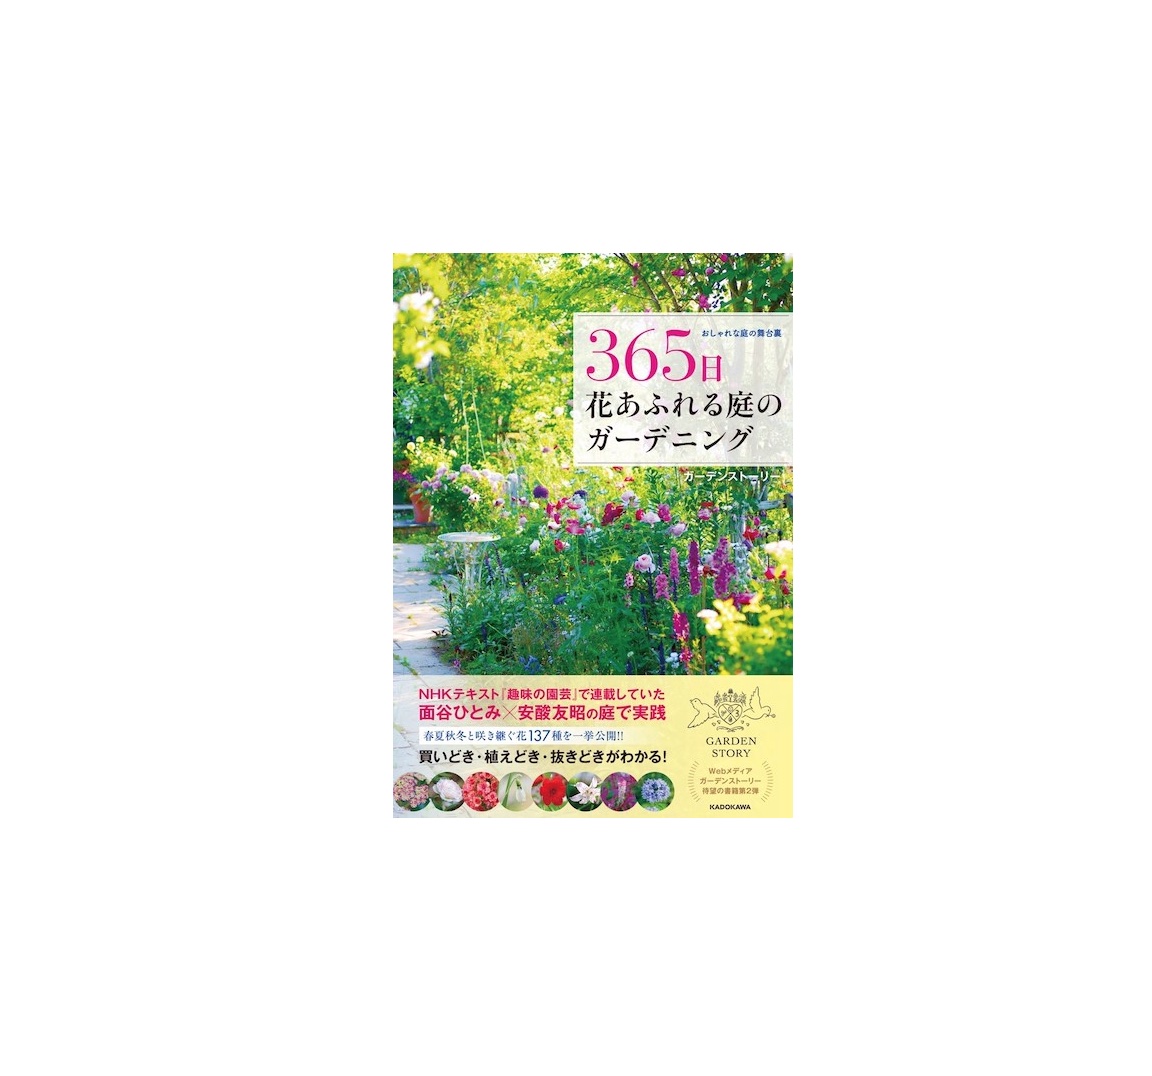 新刊『365日花あふれる庭のガーデニング』